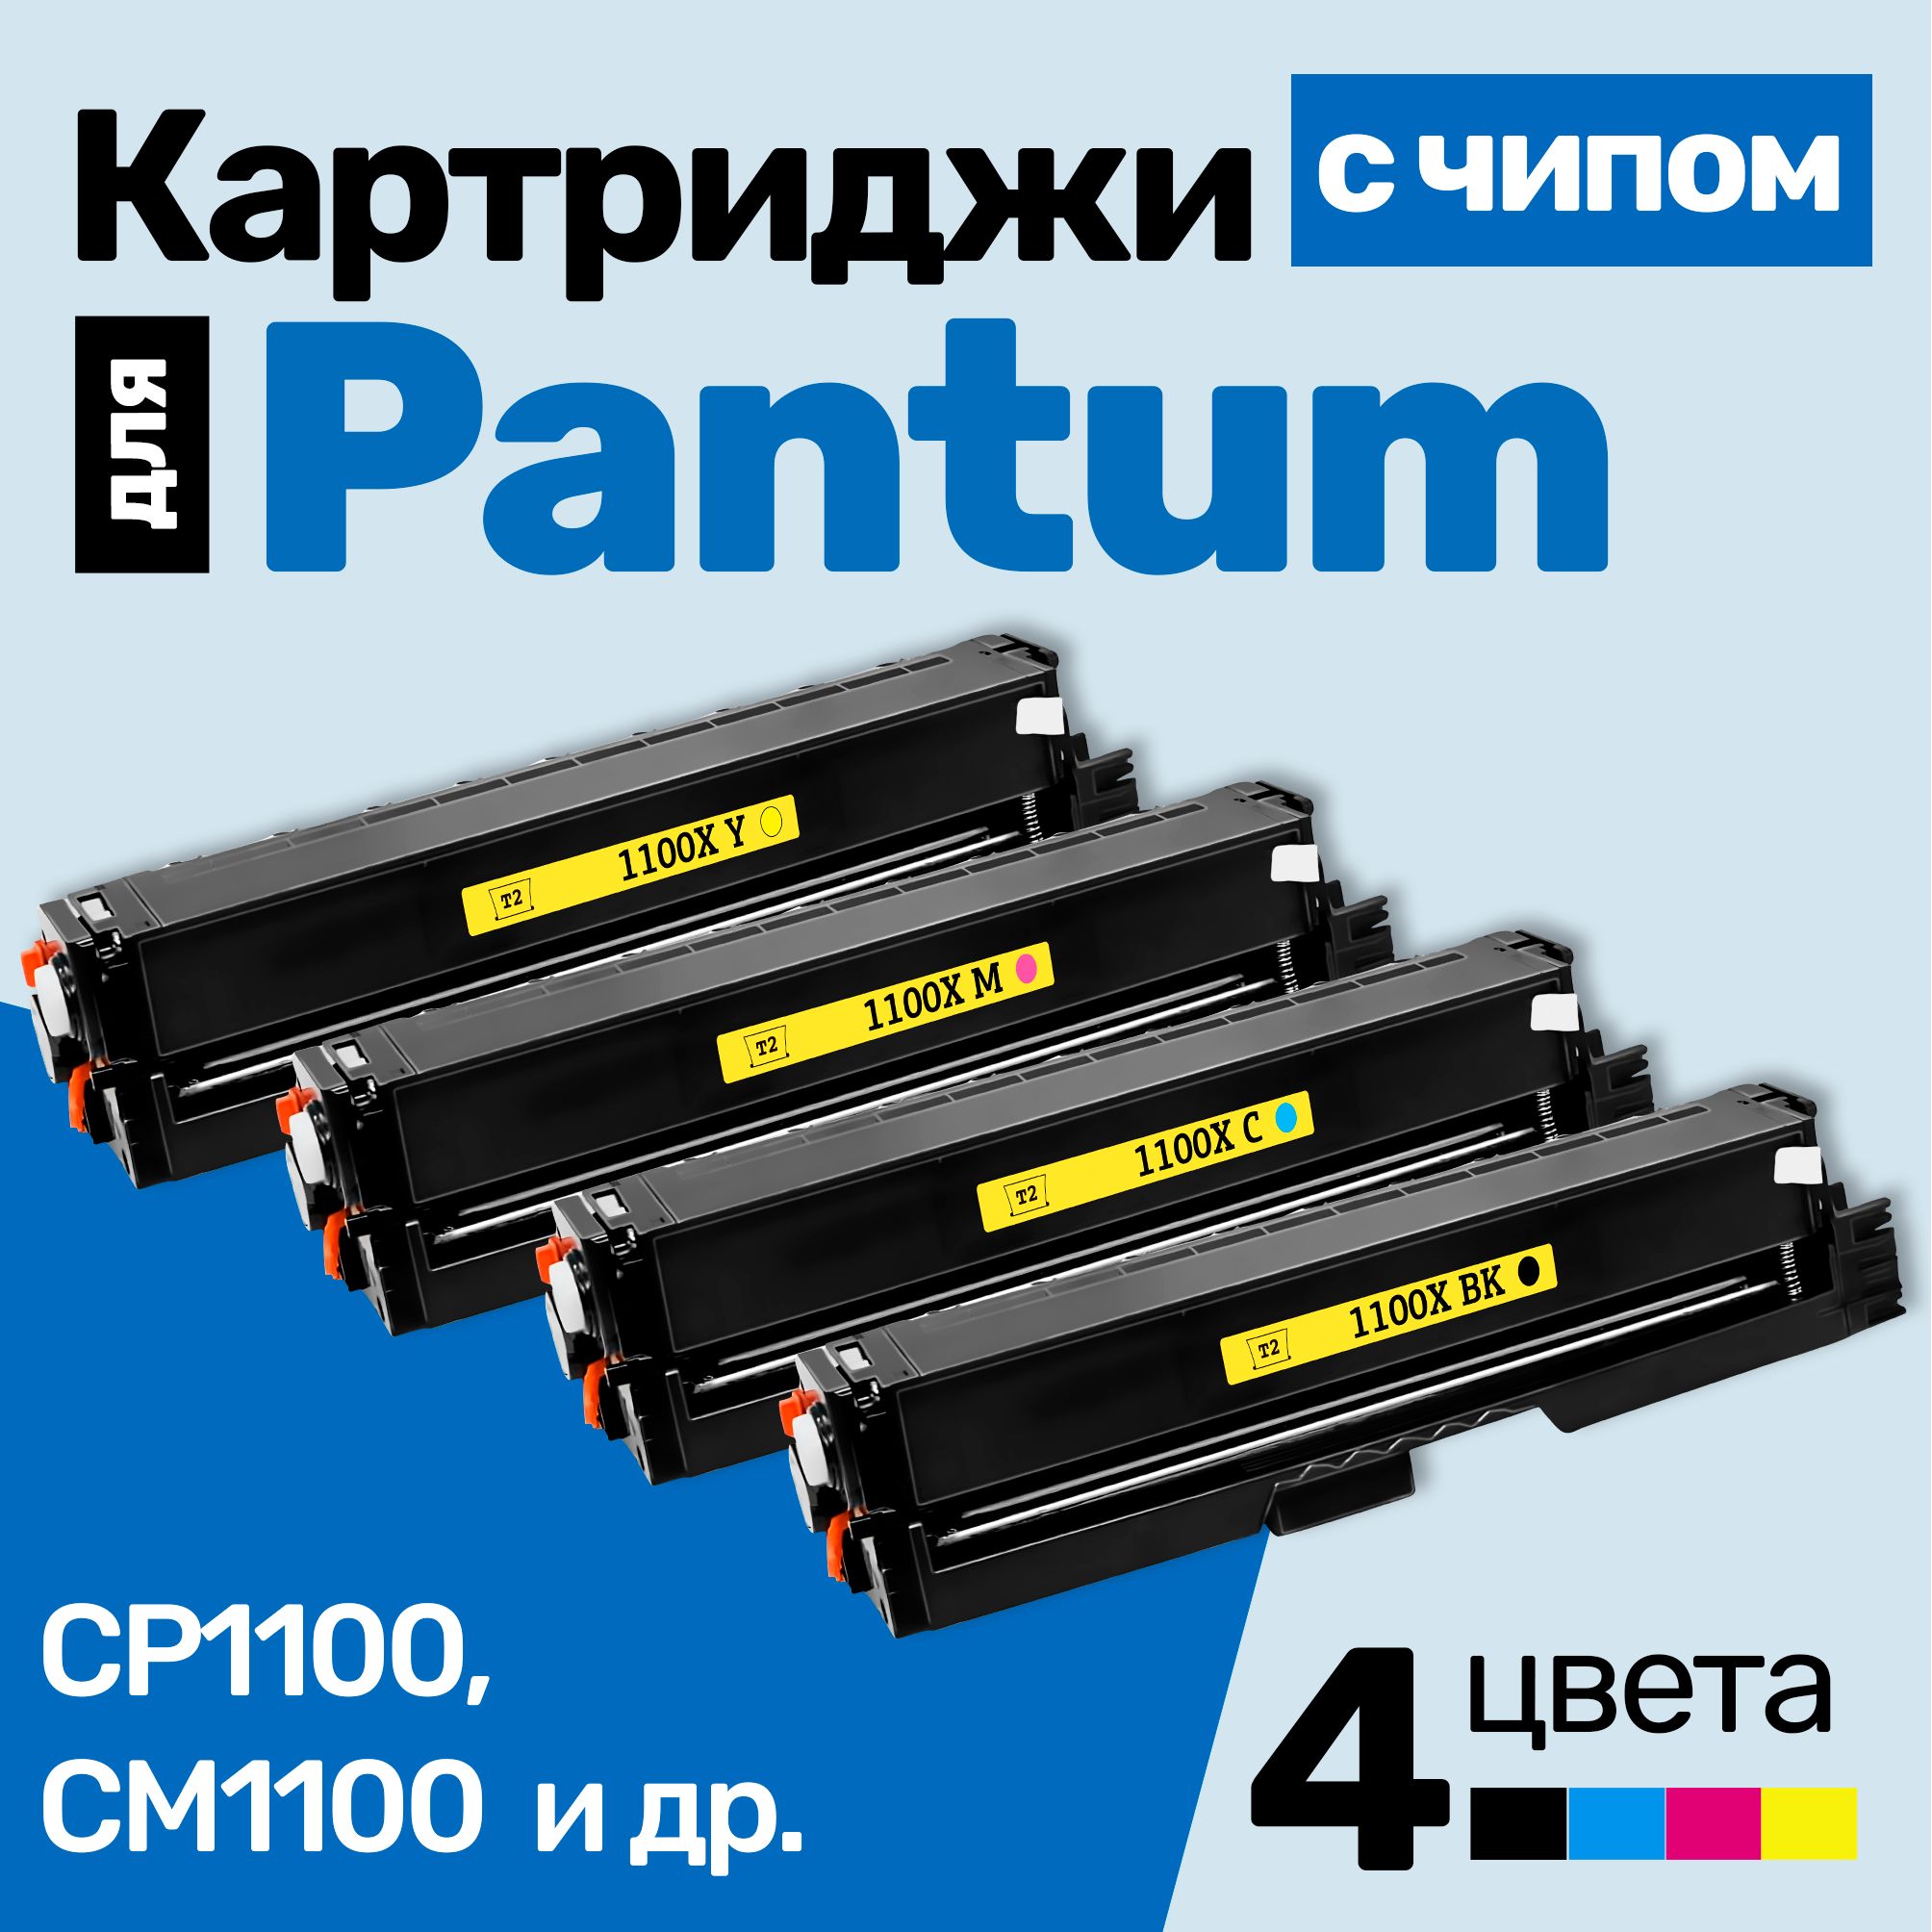 КартриджиСЧИПОМкPantumCTL-1100XK,CP1100,CM1100идр.,Пантум,стонеромновыезаправляемые,3000страниц,черный,голубой,пурпурный,желтый